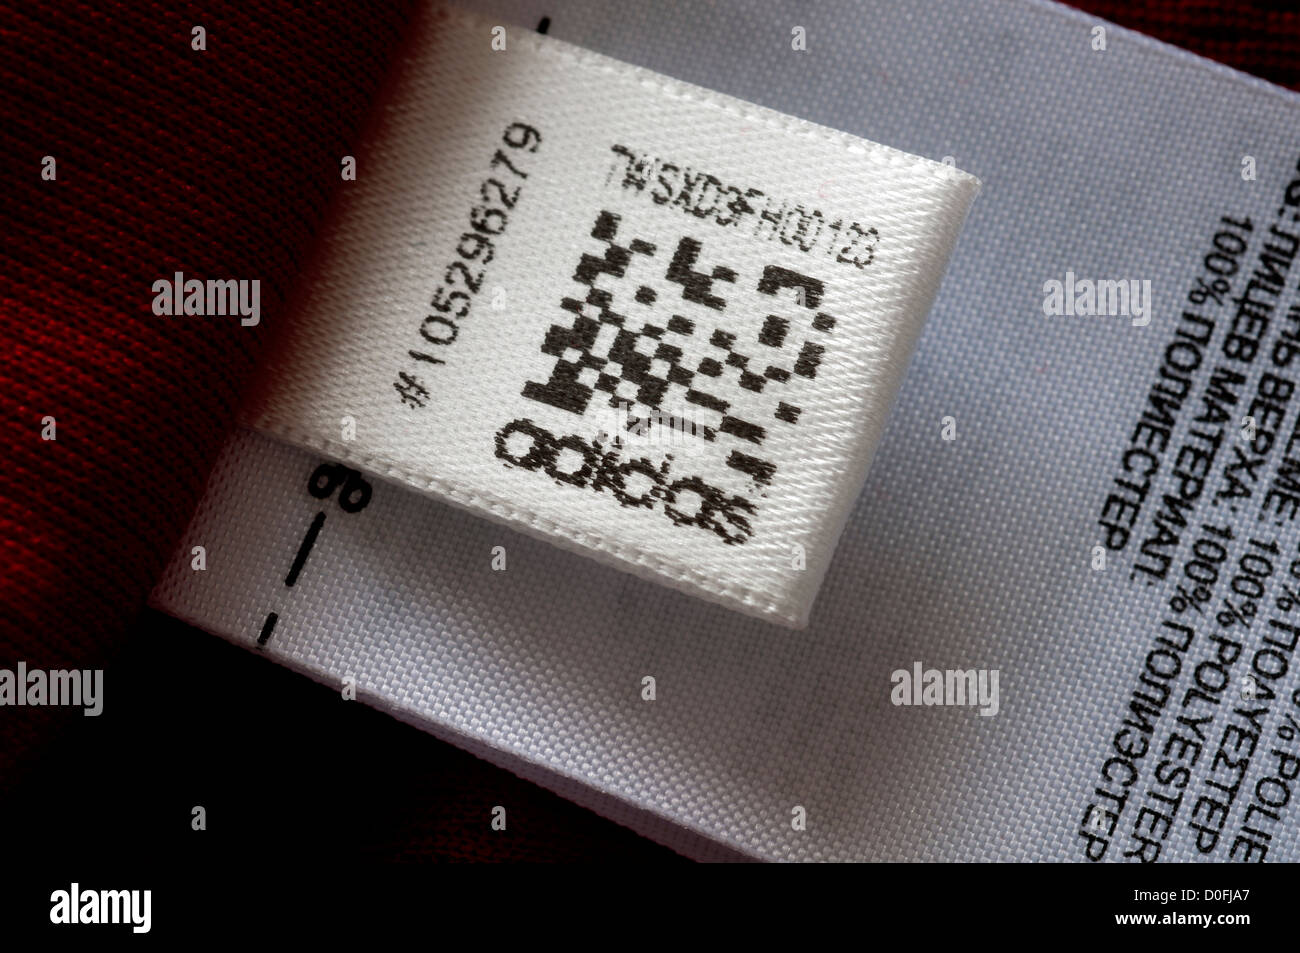 Проверить оригинальность кроссовок по qr коду. Adidas QR code. QR код adidas. Как проверить оригинальность кроссовок adidas по QR коду. Адидас QR код считать.